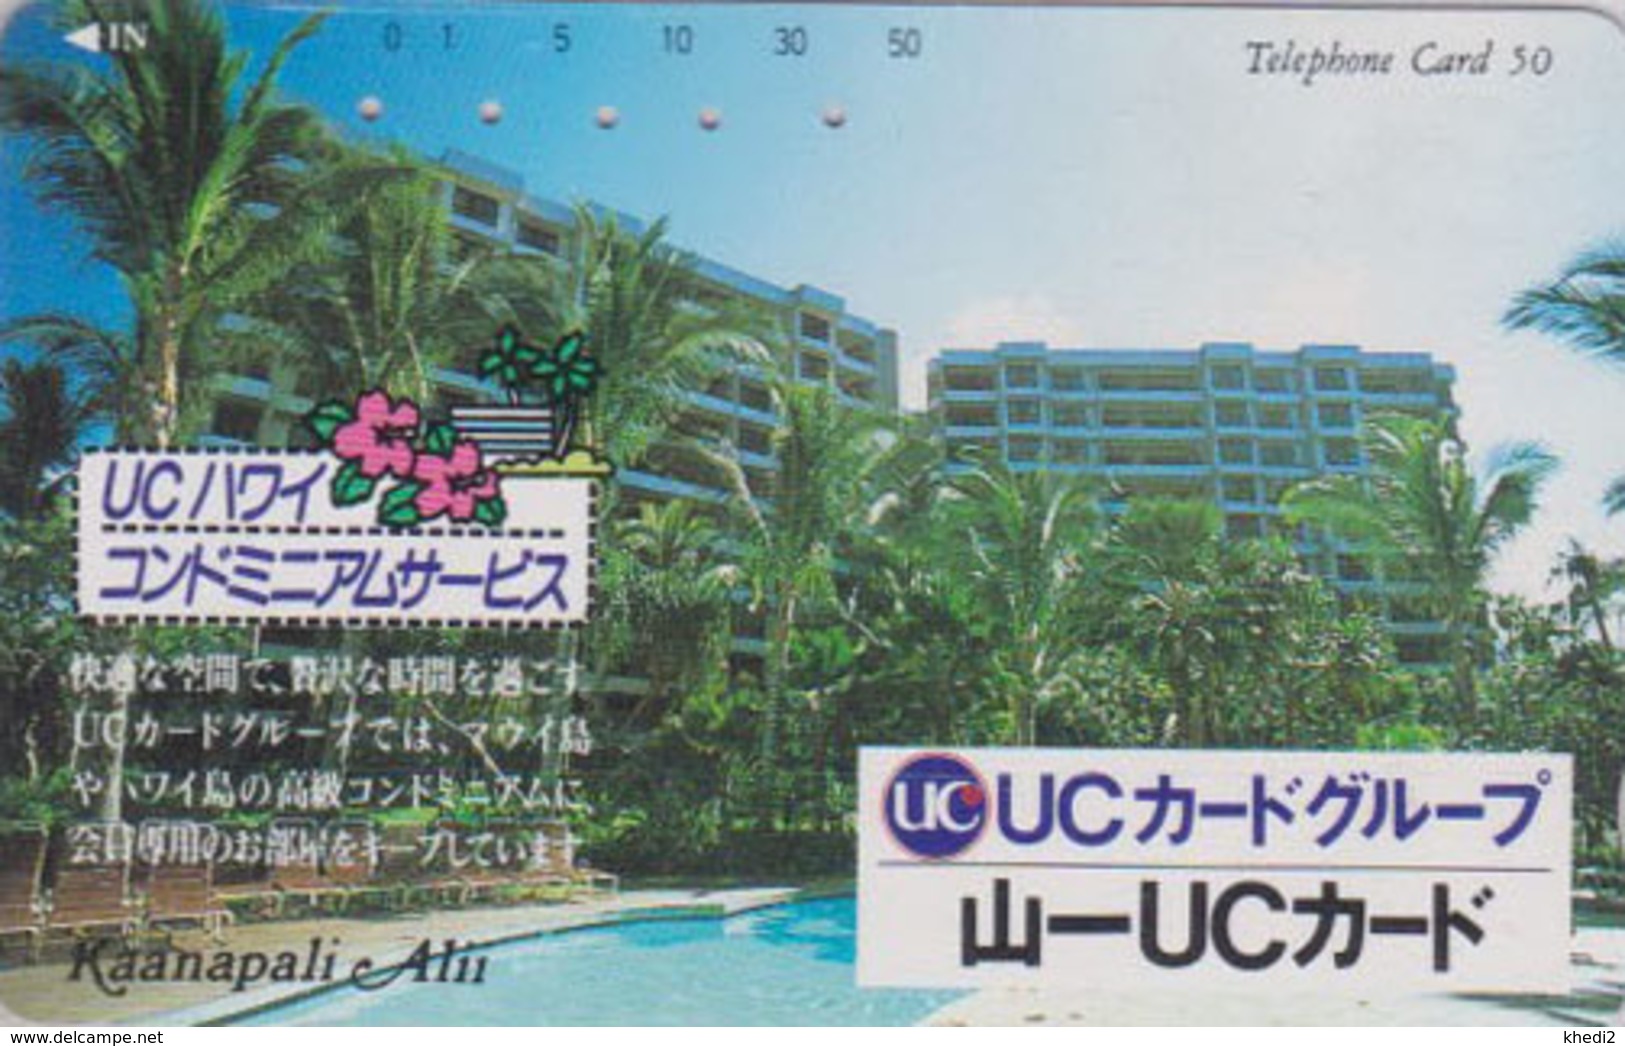 Télécarte Japon / 110-117617 - HAWAII - KAANAPALI - UC BANK CREDIT CARD / Modèle 1 - Japan Phonecard - Site USA 459 - Stamps & Coins